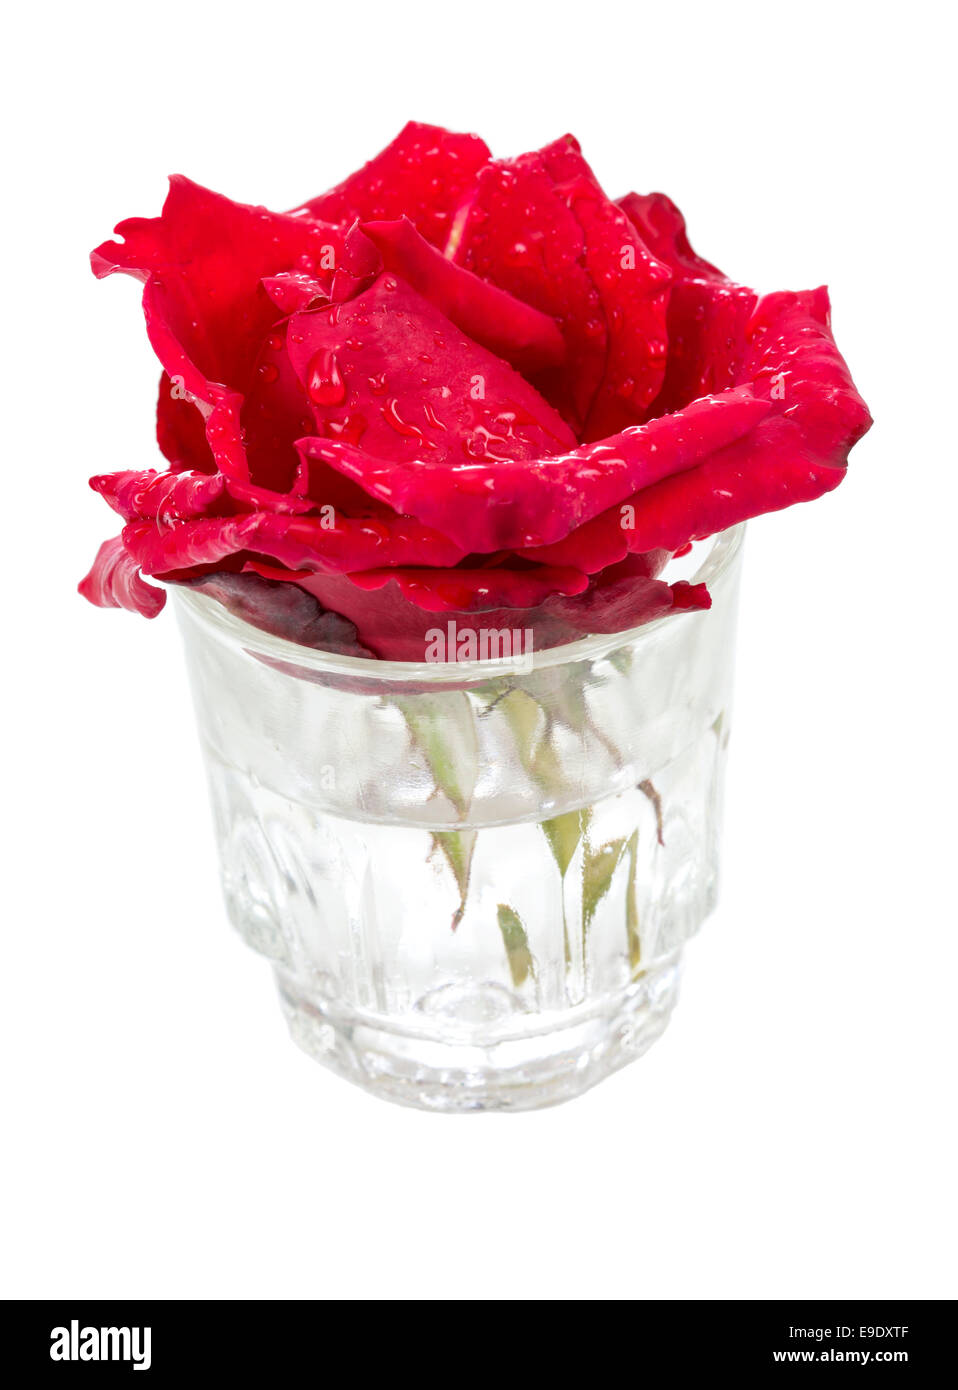 Belle rose rouge frais avec de l'eau tombe dans un vase de verre isolé sur fond blanc Banque D'Images